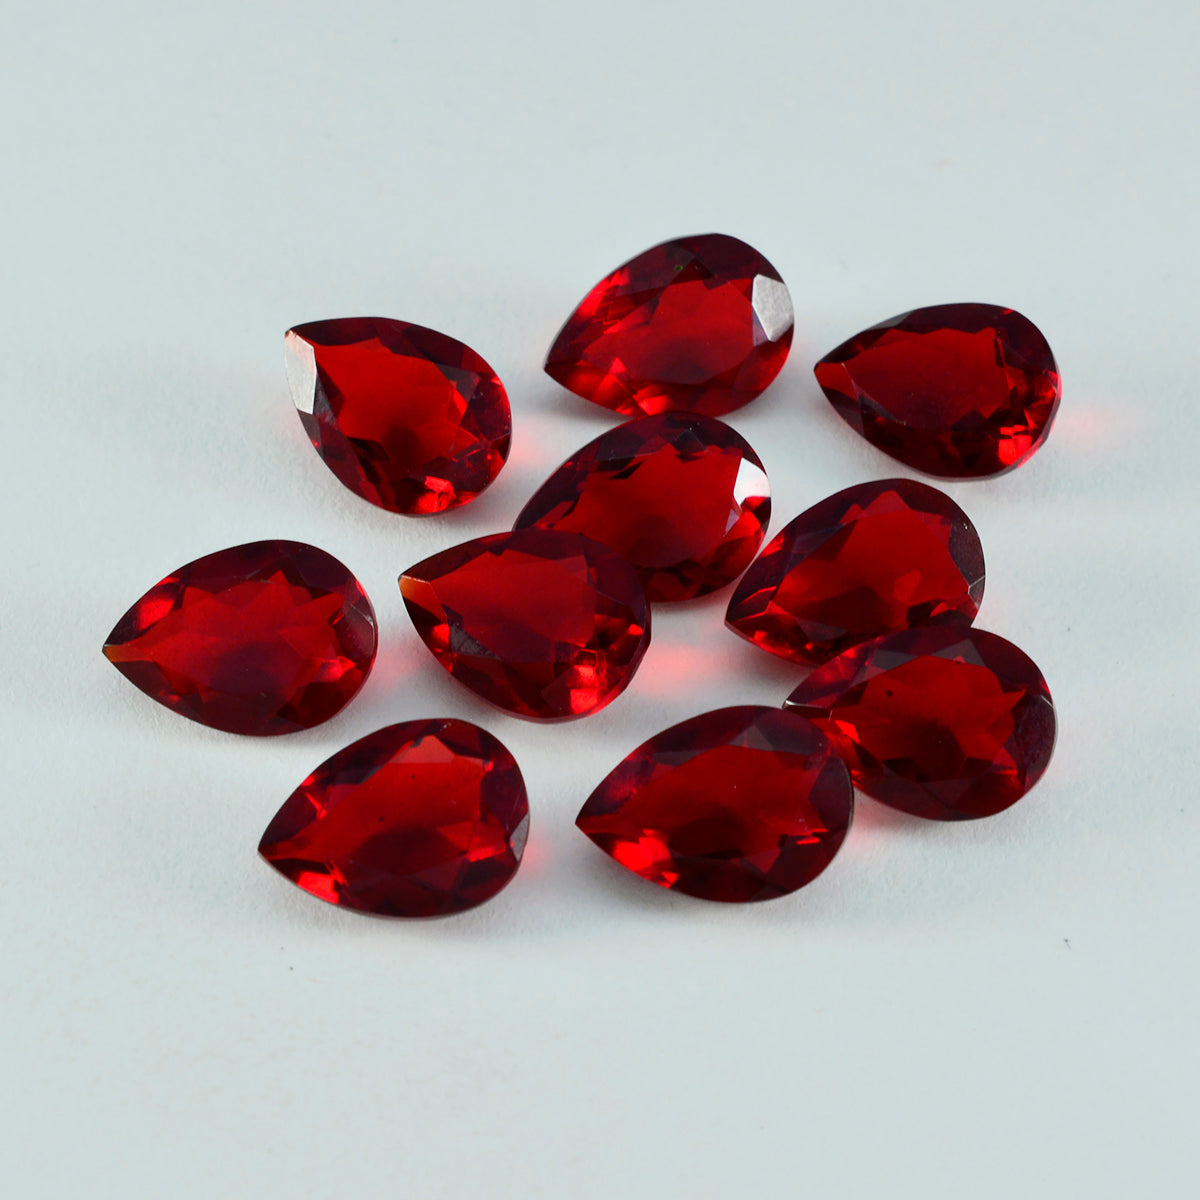 Riyogems 1 Stück roter Rubin mit CZ, facettiert, 6 x 9 mm, Birnenform, Schönheits-Qualitätsedelstein